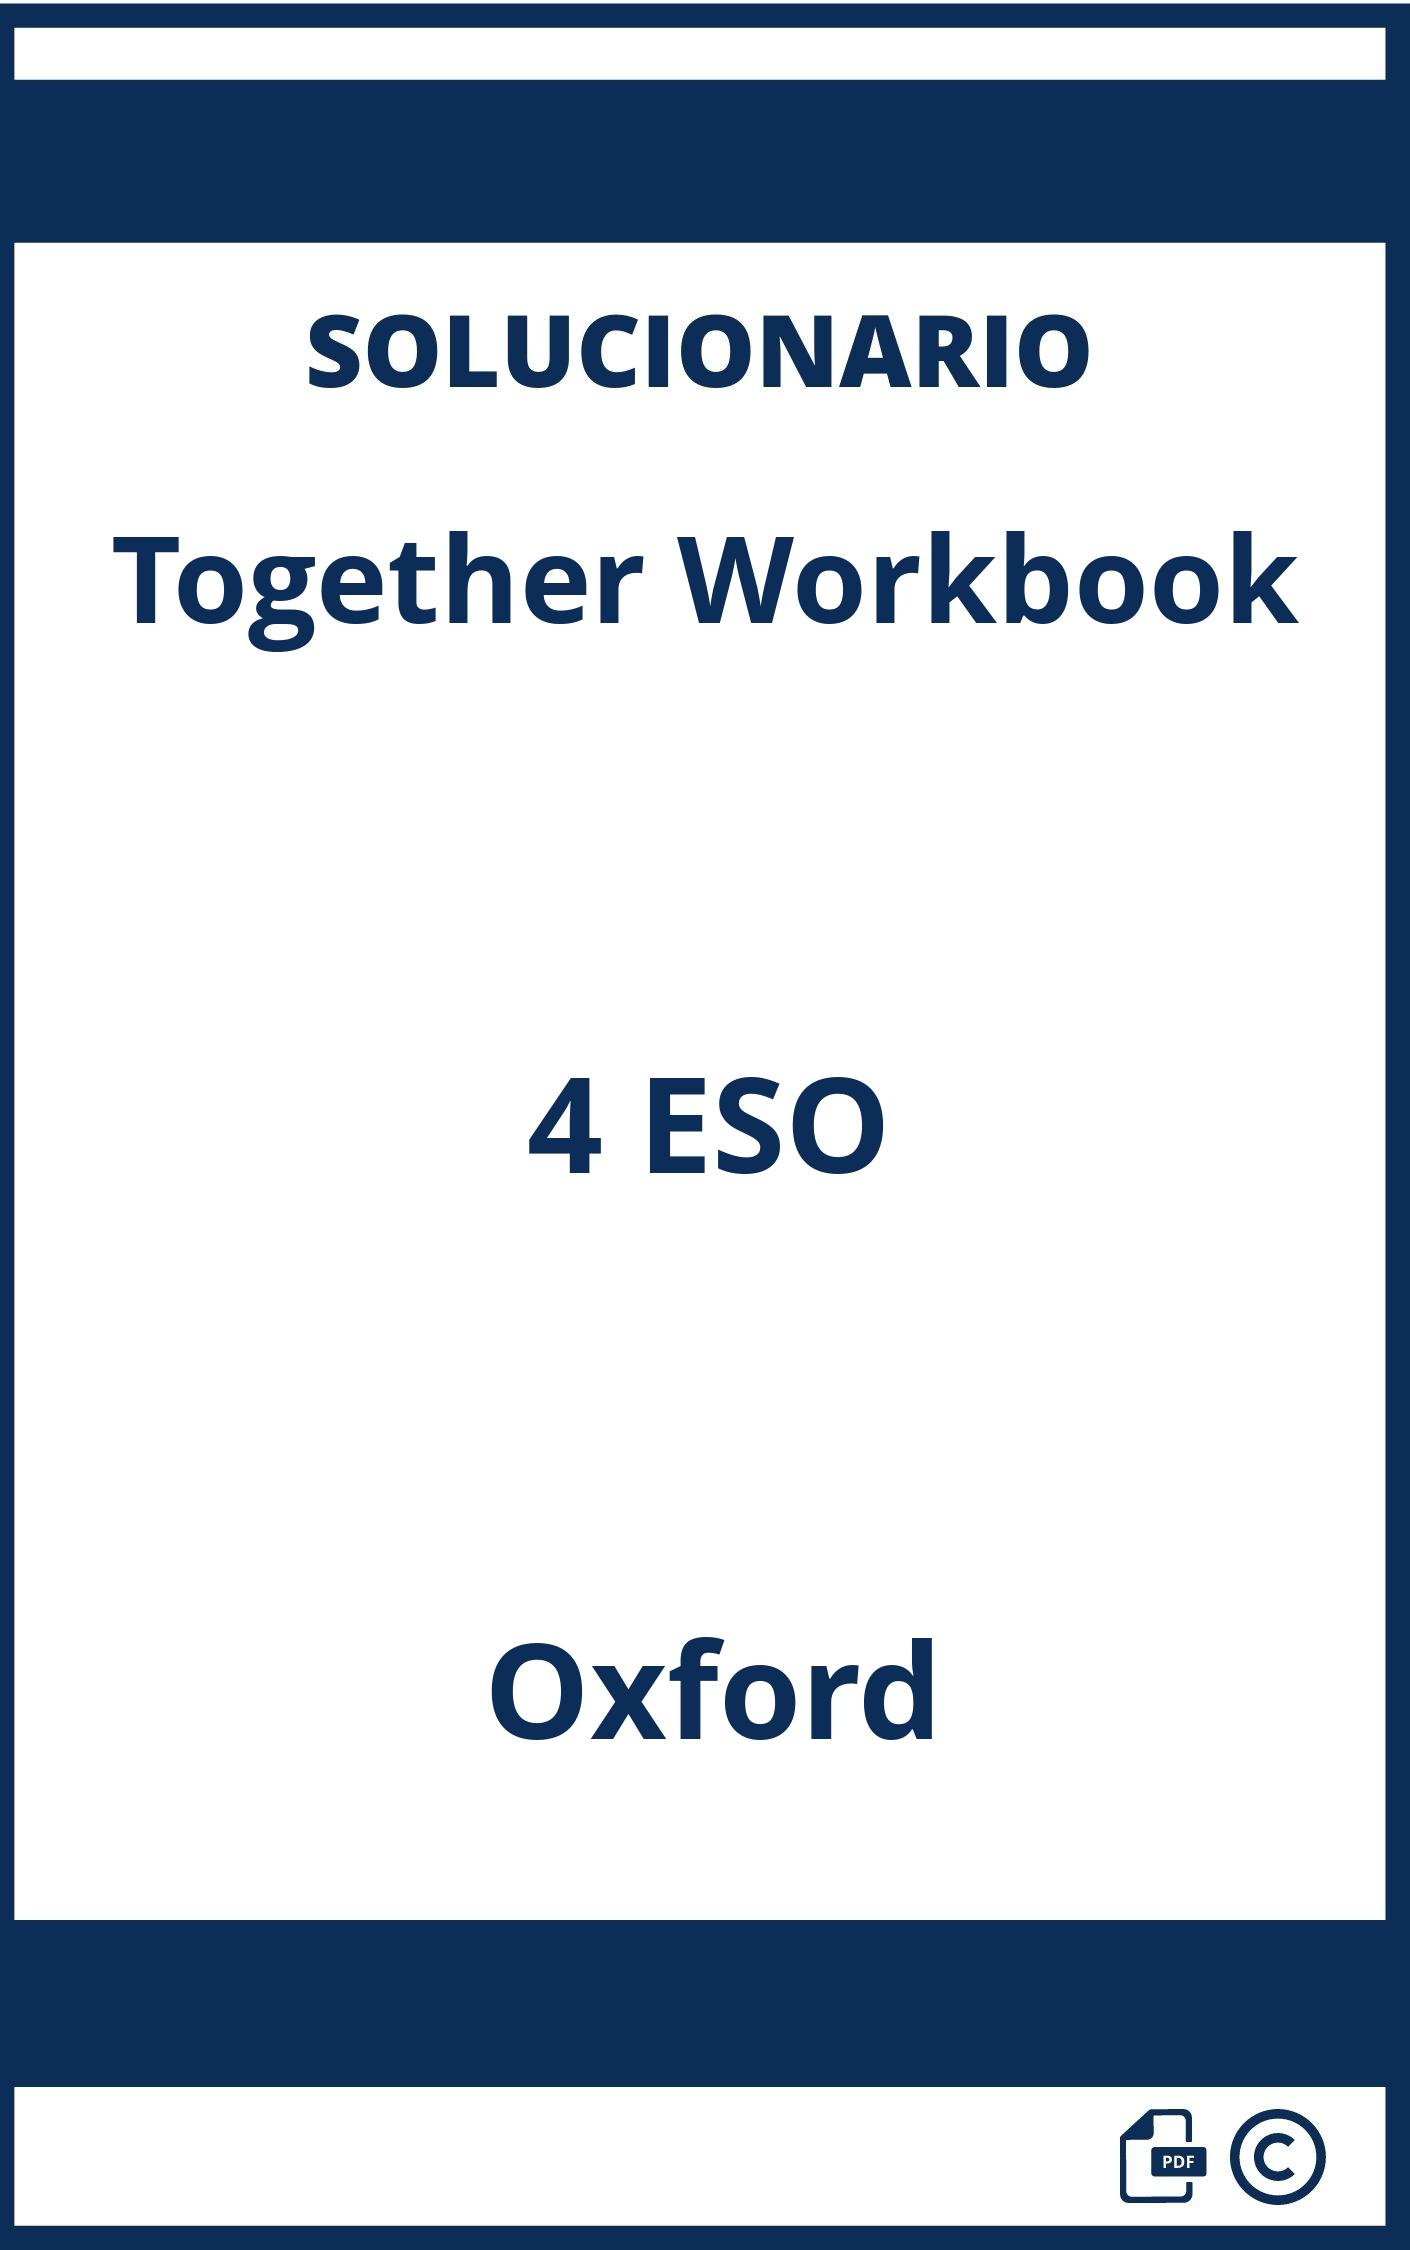 Solucionario Together Workbook 4 ESO Oxford